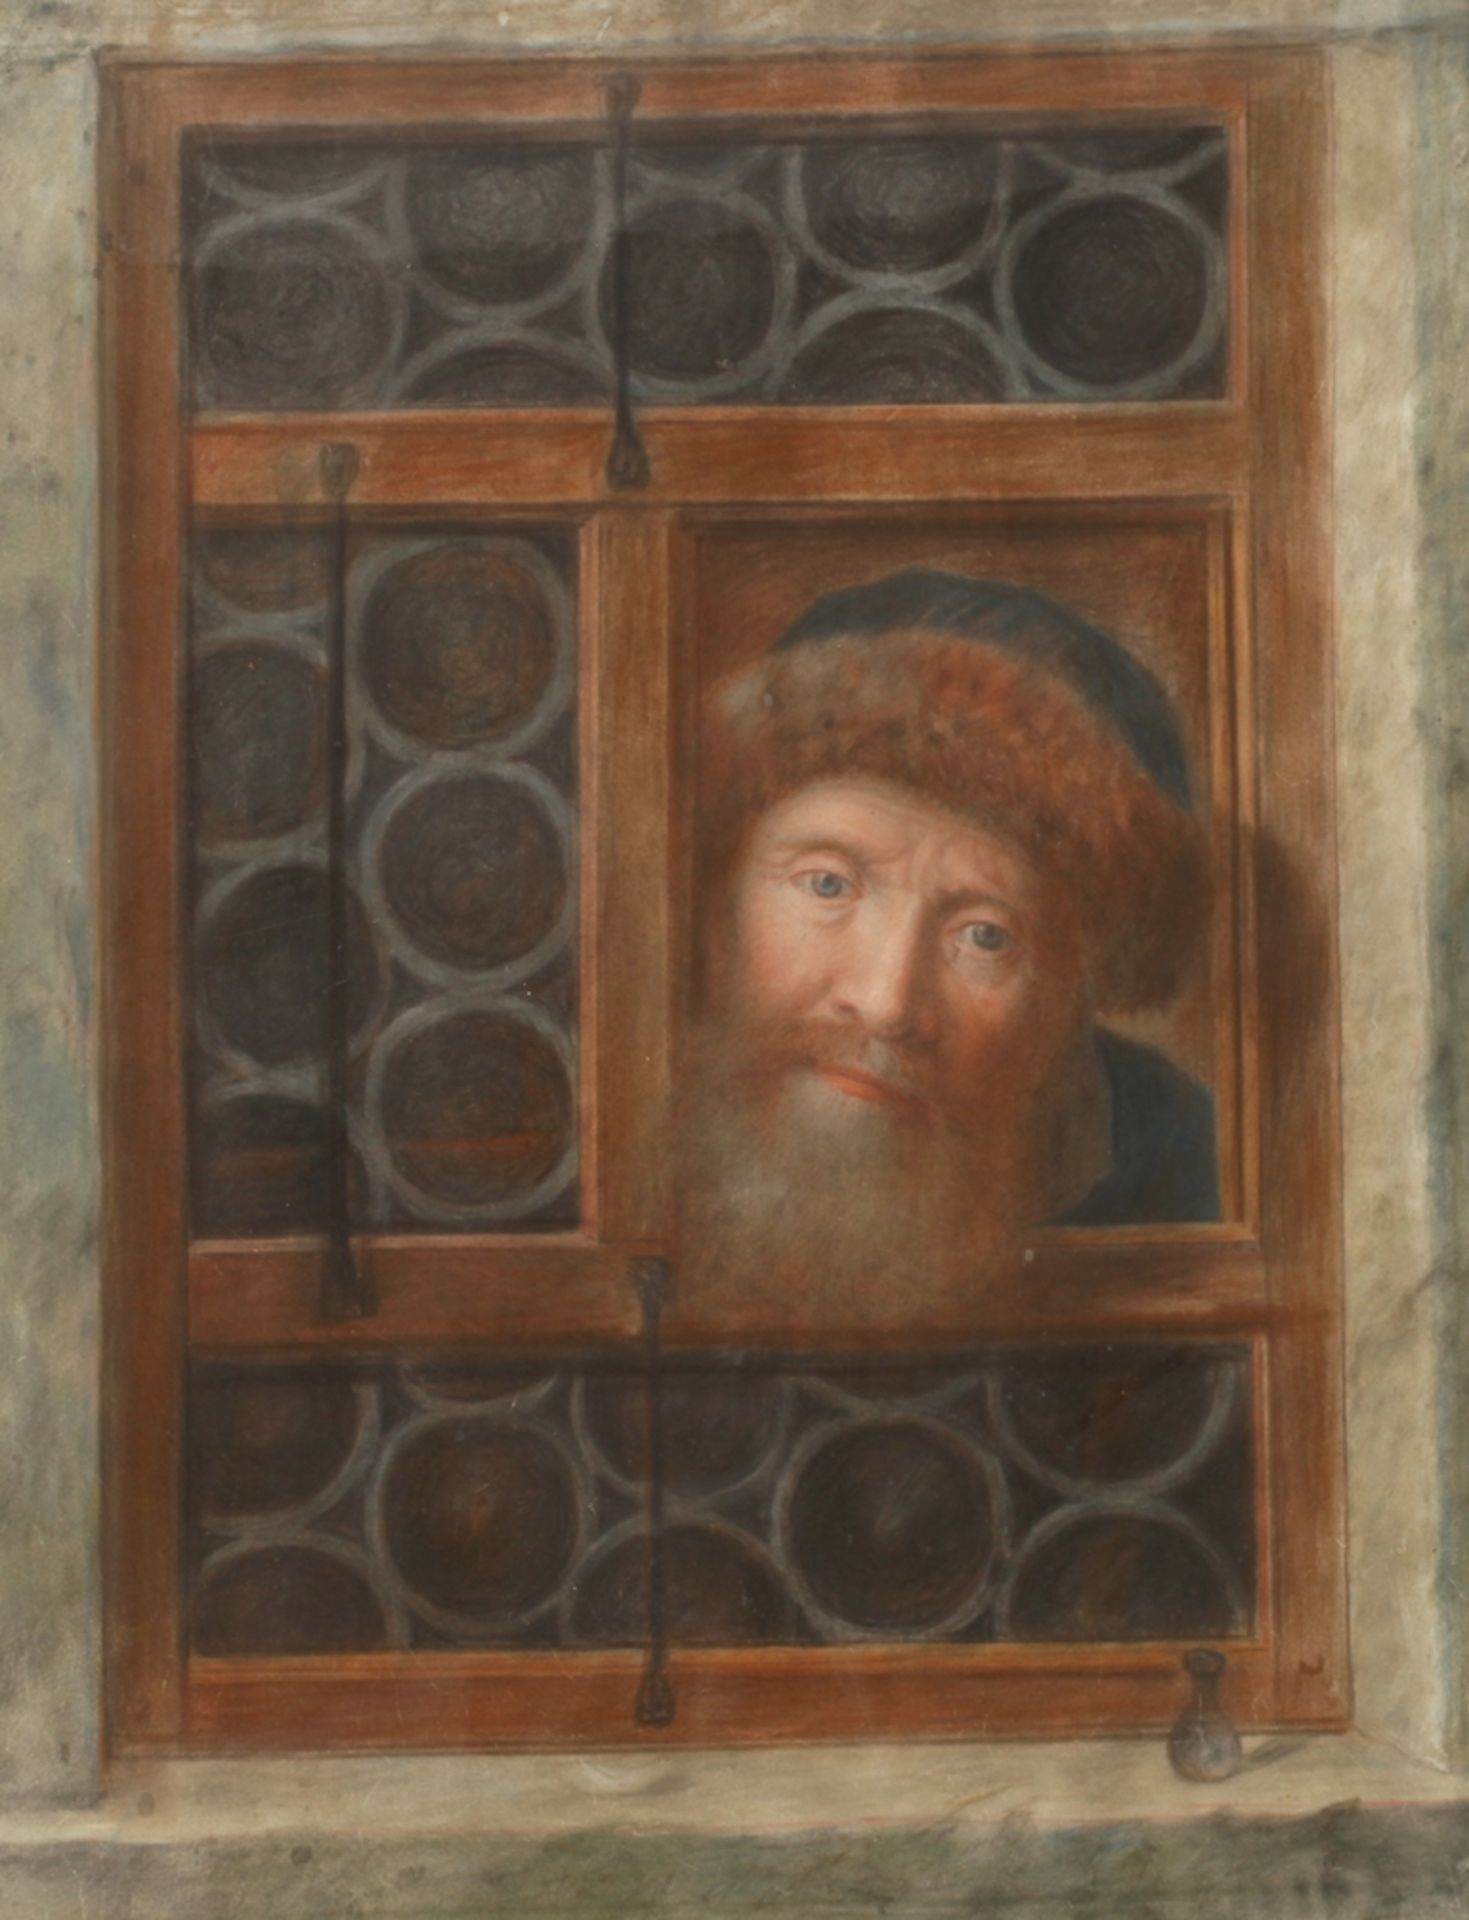 Mann am Fenster bärtiger Mann, durch ein geöffnetes Fenster mit Putzschscheiben den Betrachter